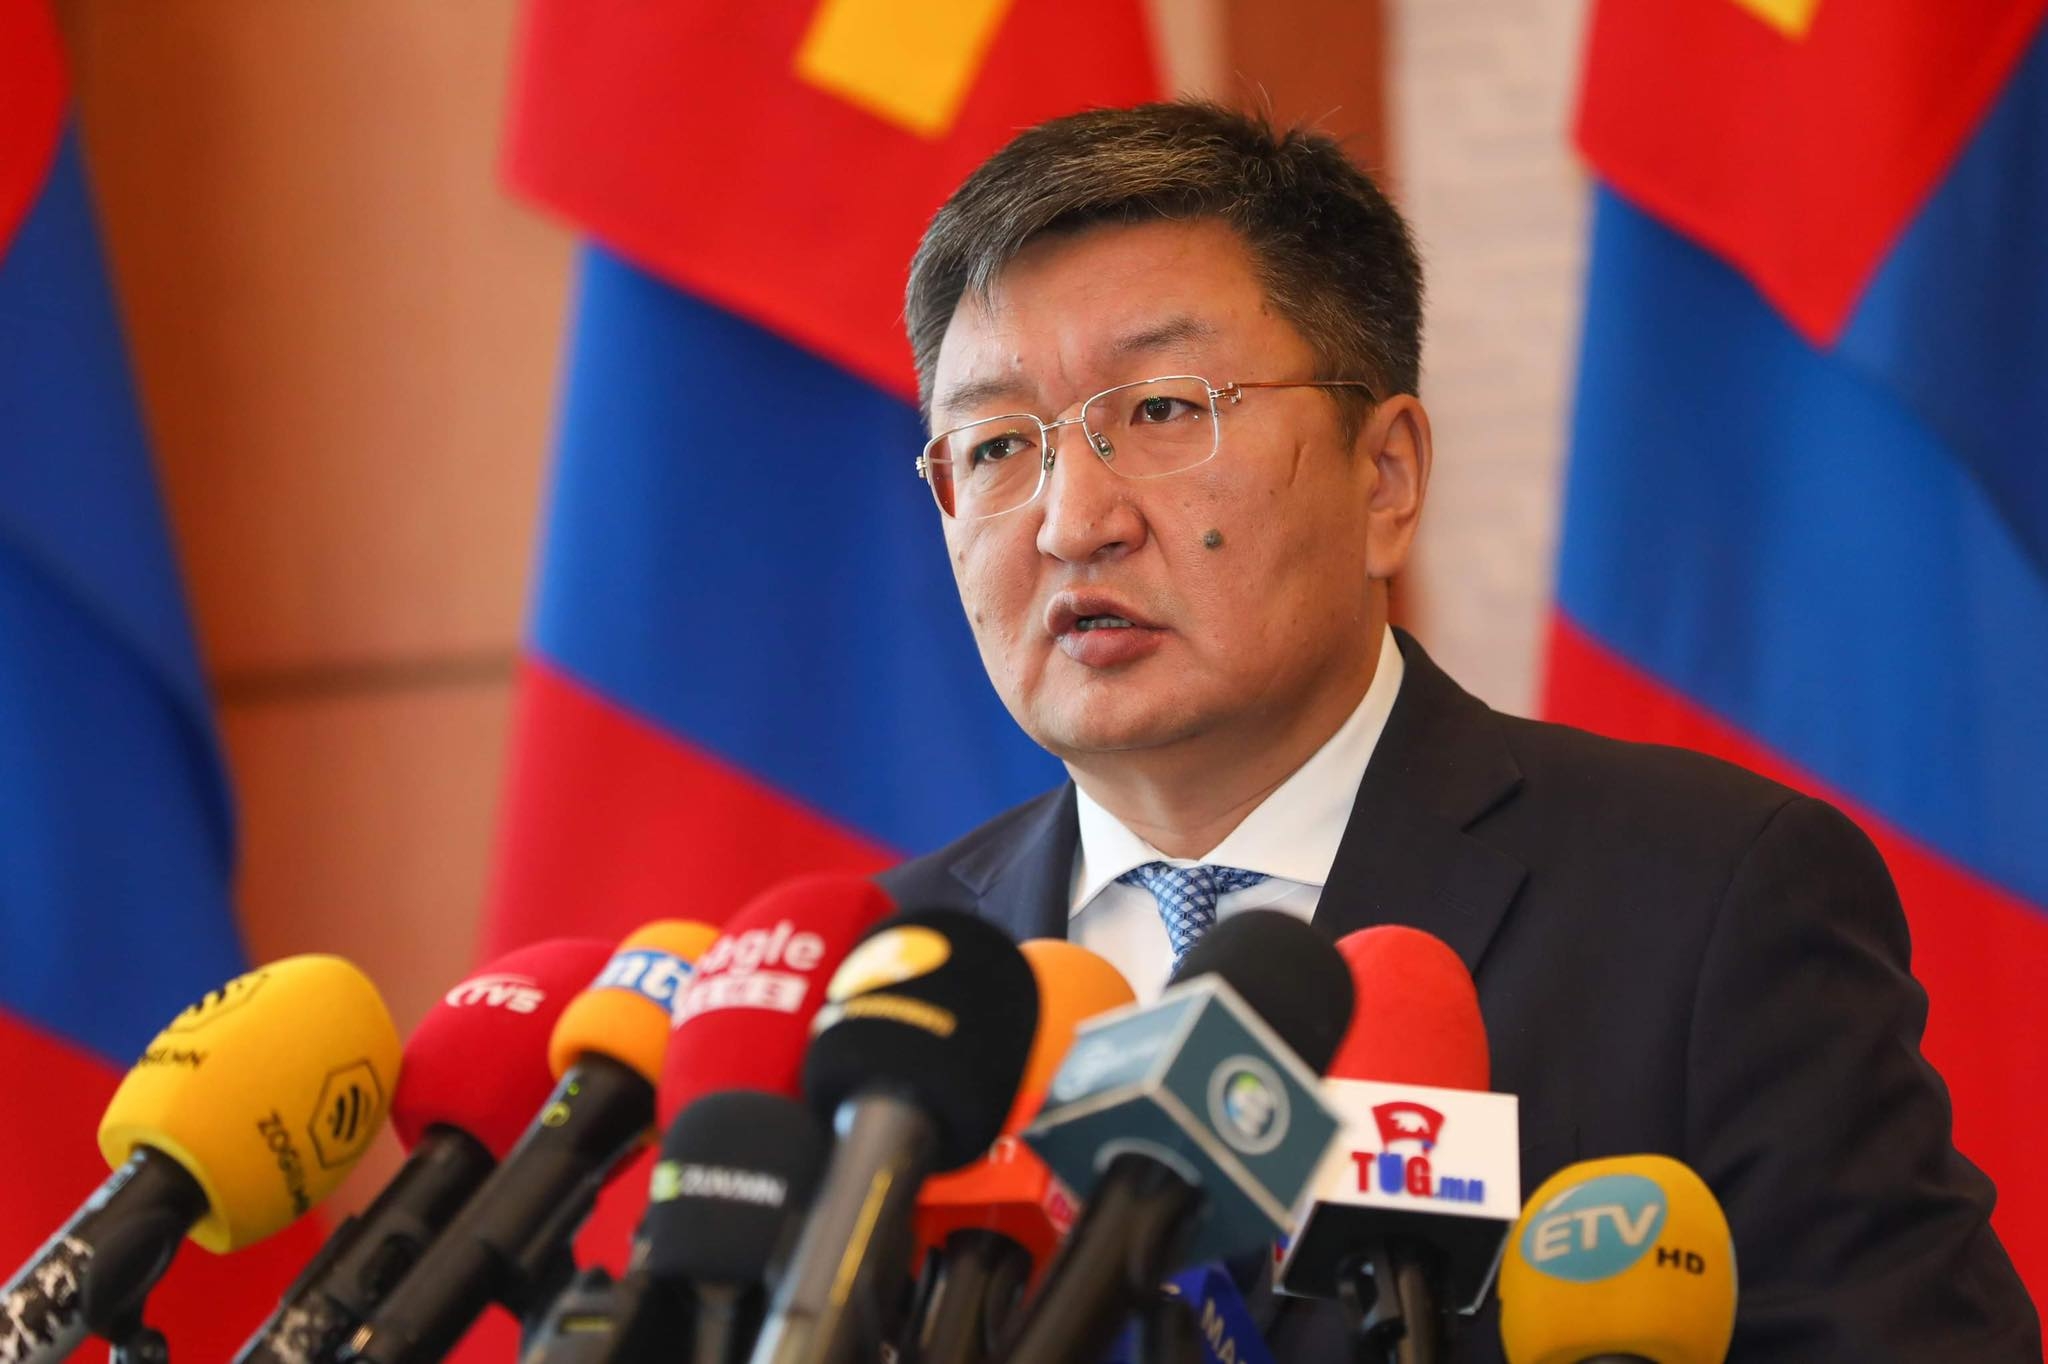 Монгол Улсын Ерөнхийлөгч У.Хүрэлсүх нэр бүхий хуулиудад бүхэлд нь хориг тавив